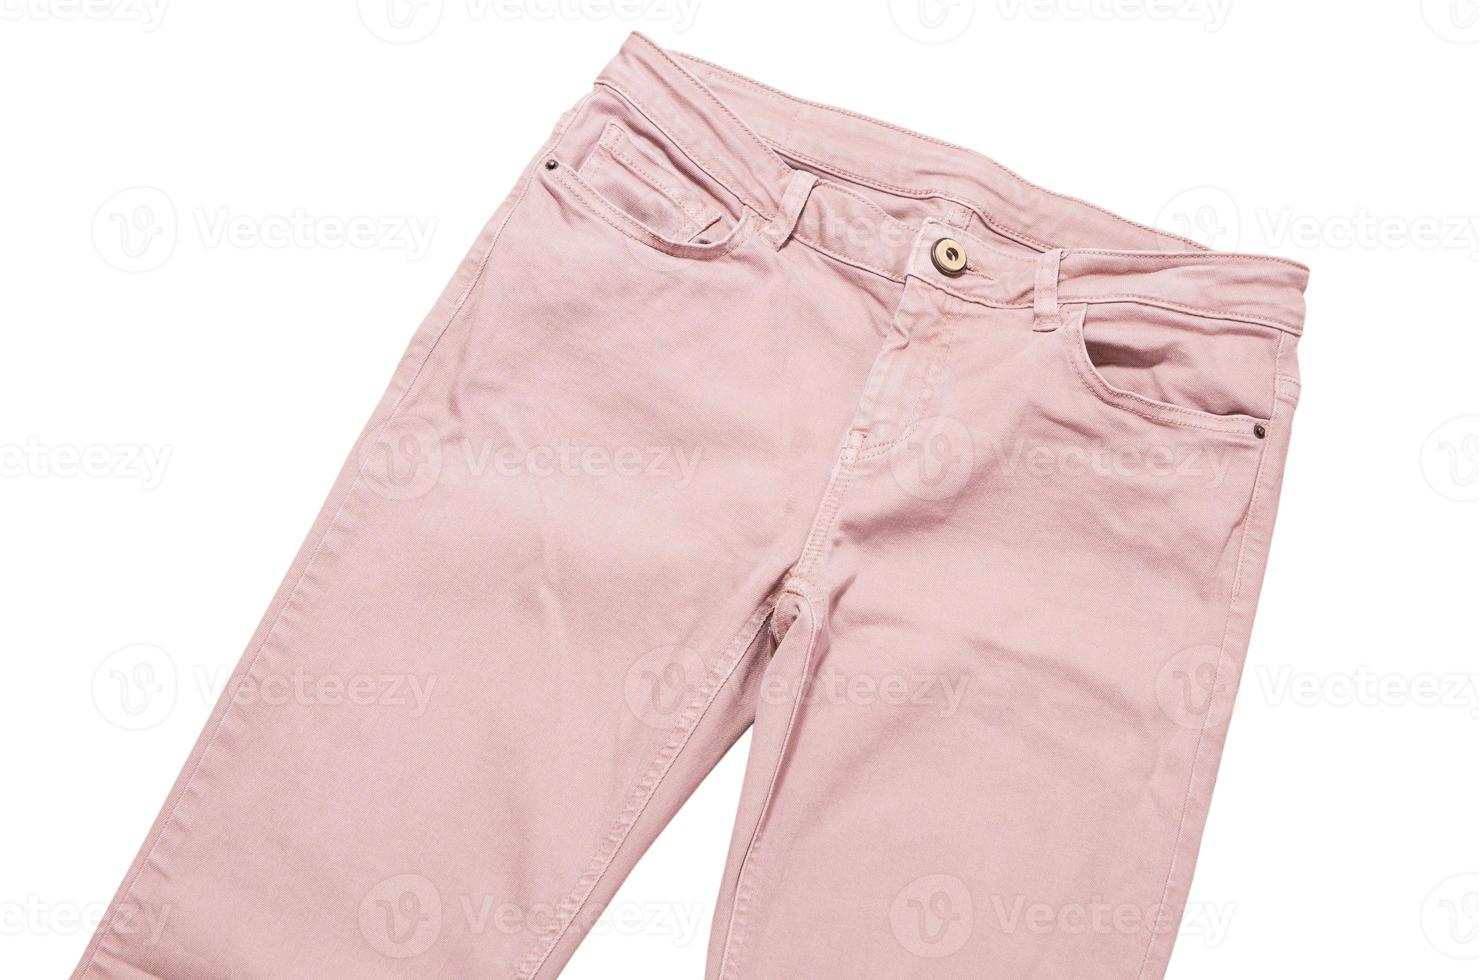 pantalon femme, pantalon en jean rose clair vue de dessus isolé sur fond blanc, pantalon slim plié photo